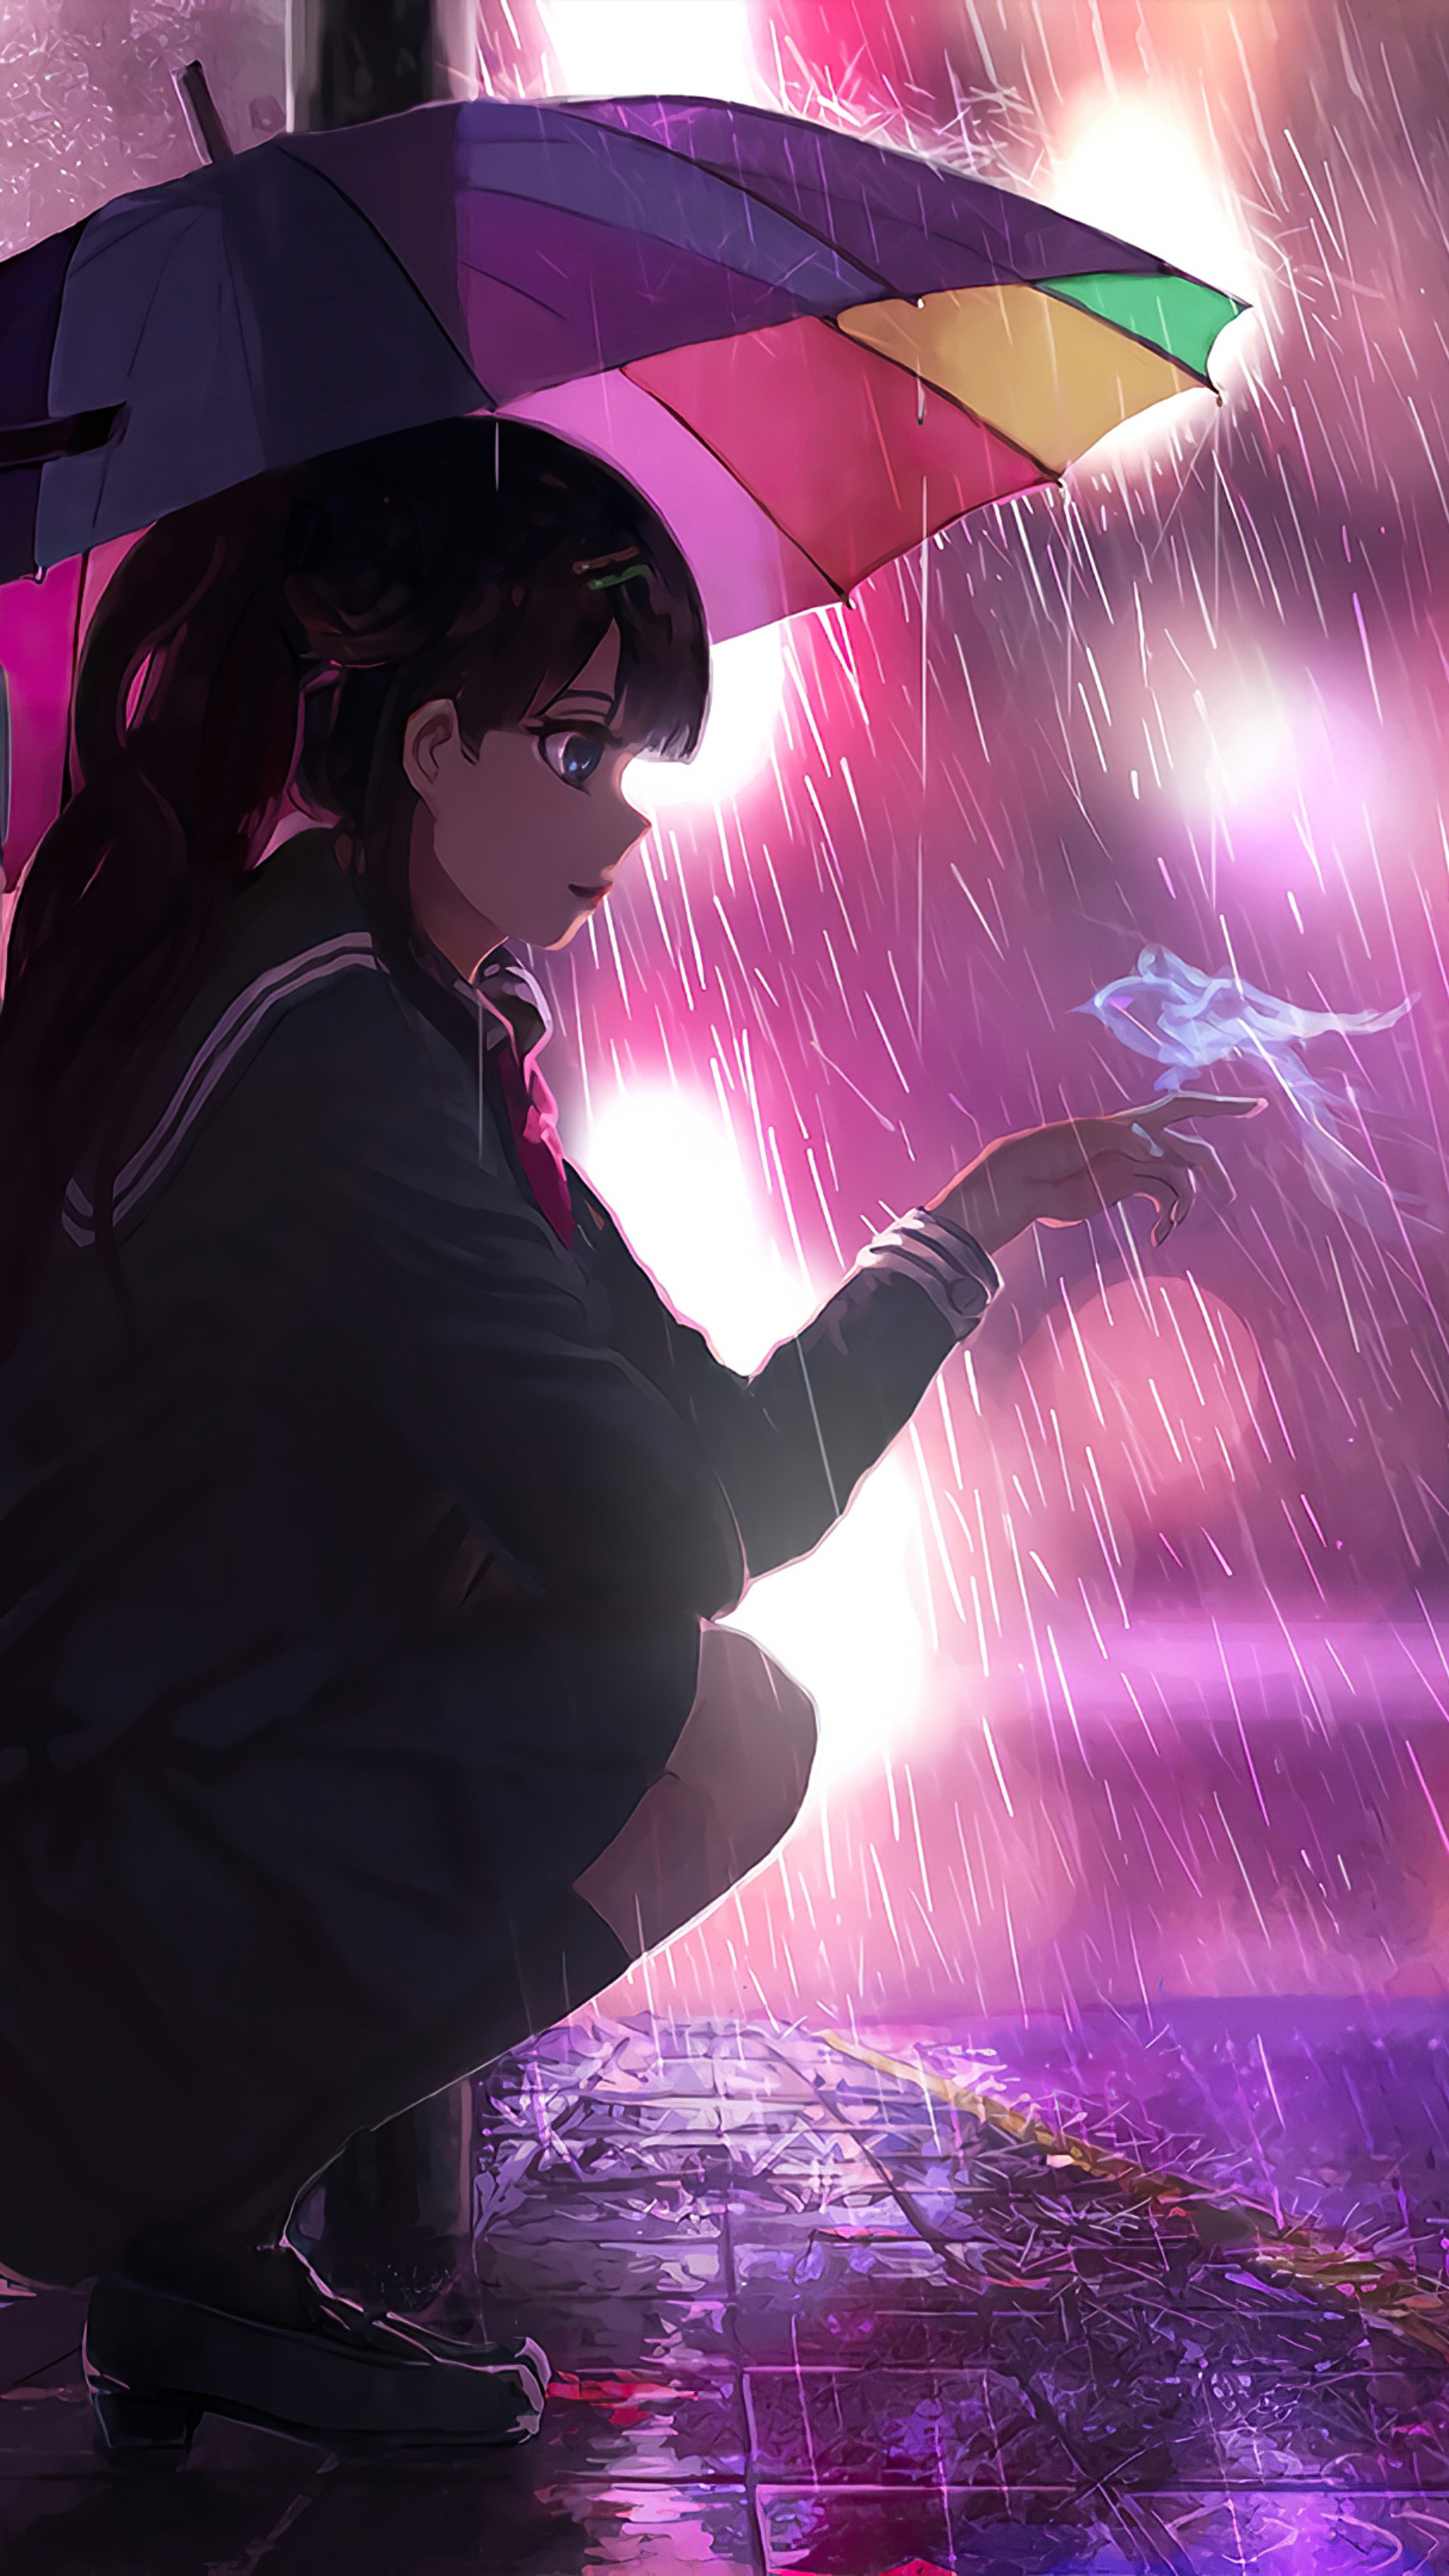 2160x3840-umbrella-rain-anime-girl-4k-sony-xperia-x-xz-z5-premium-hd-4k